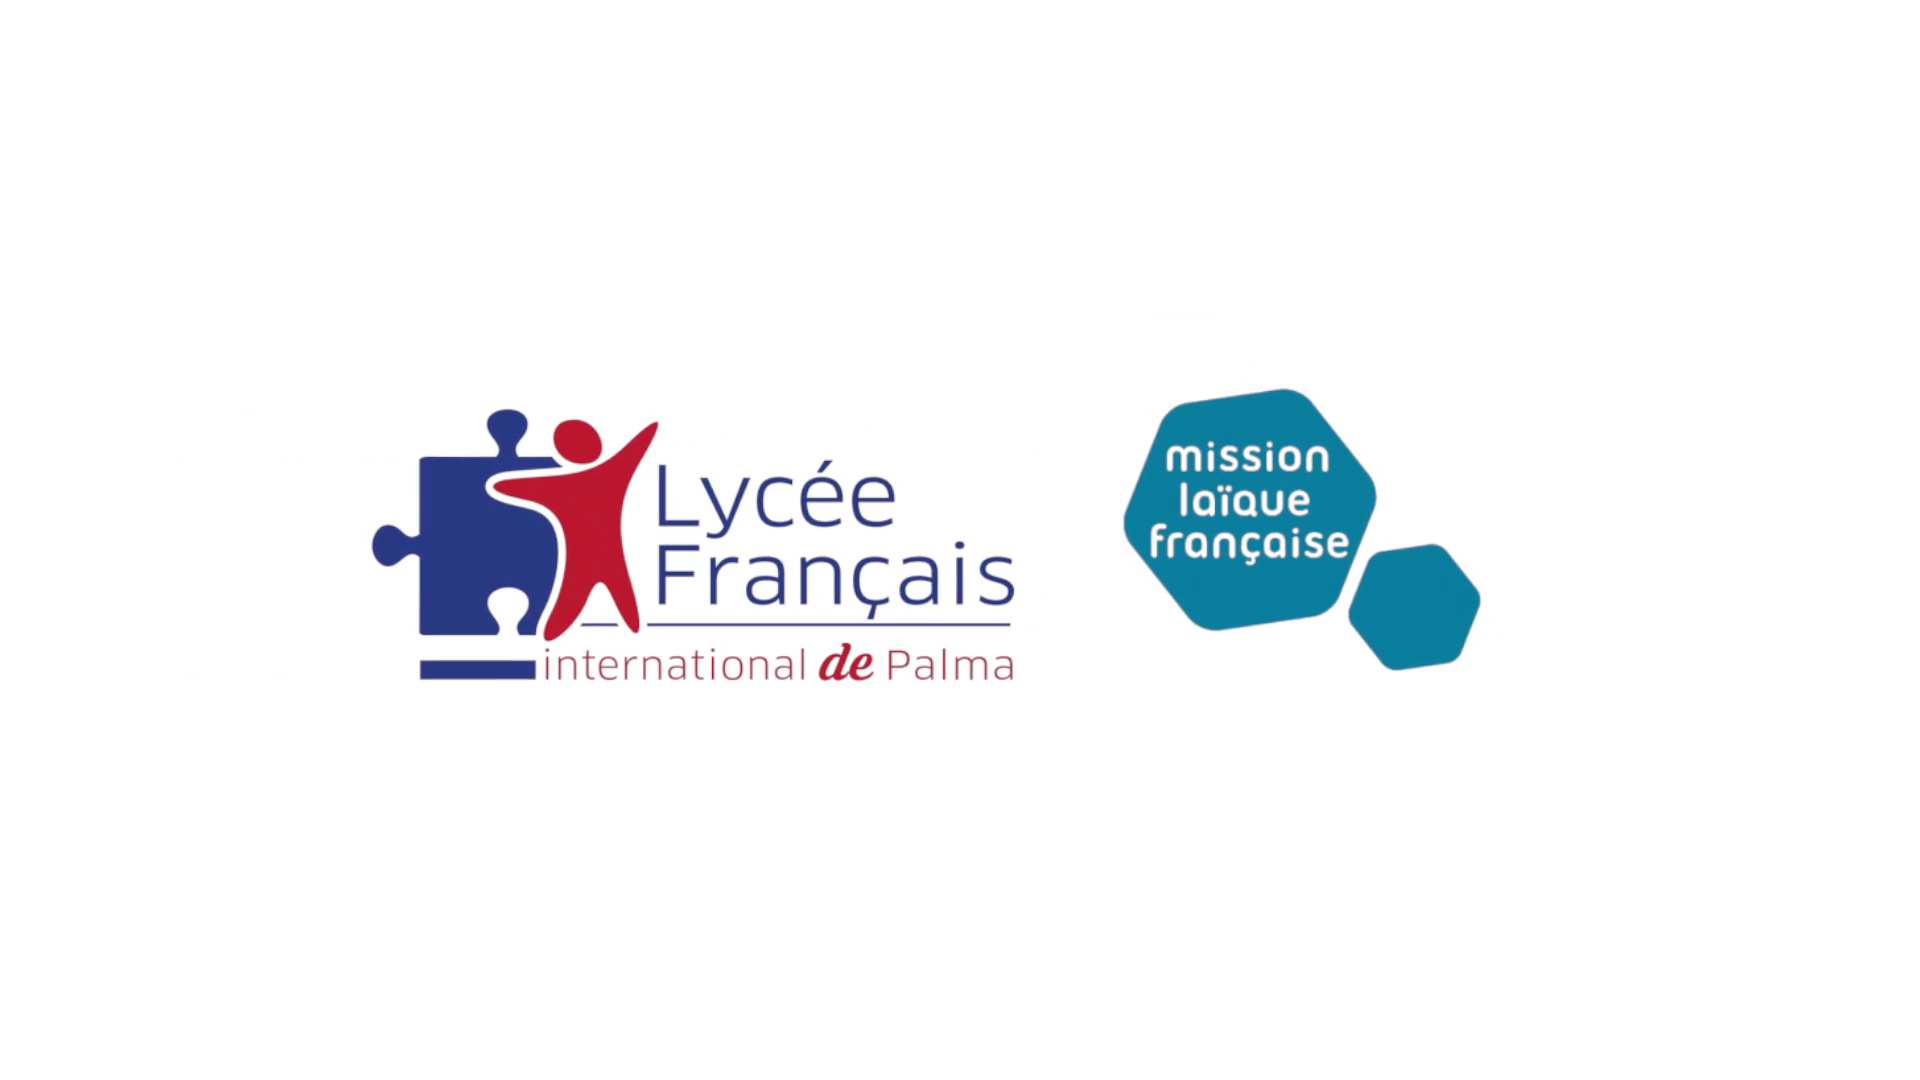 Lycée Français Internacional de Palma